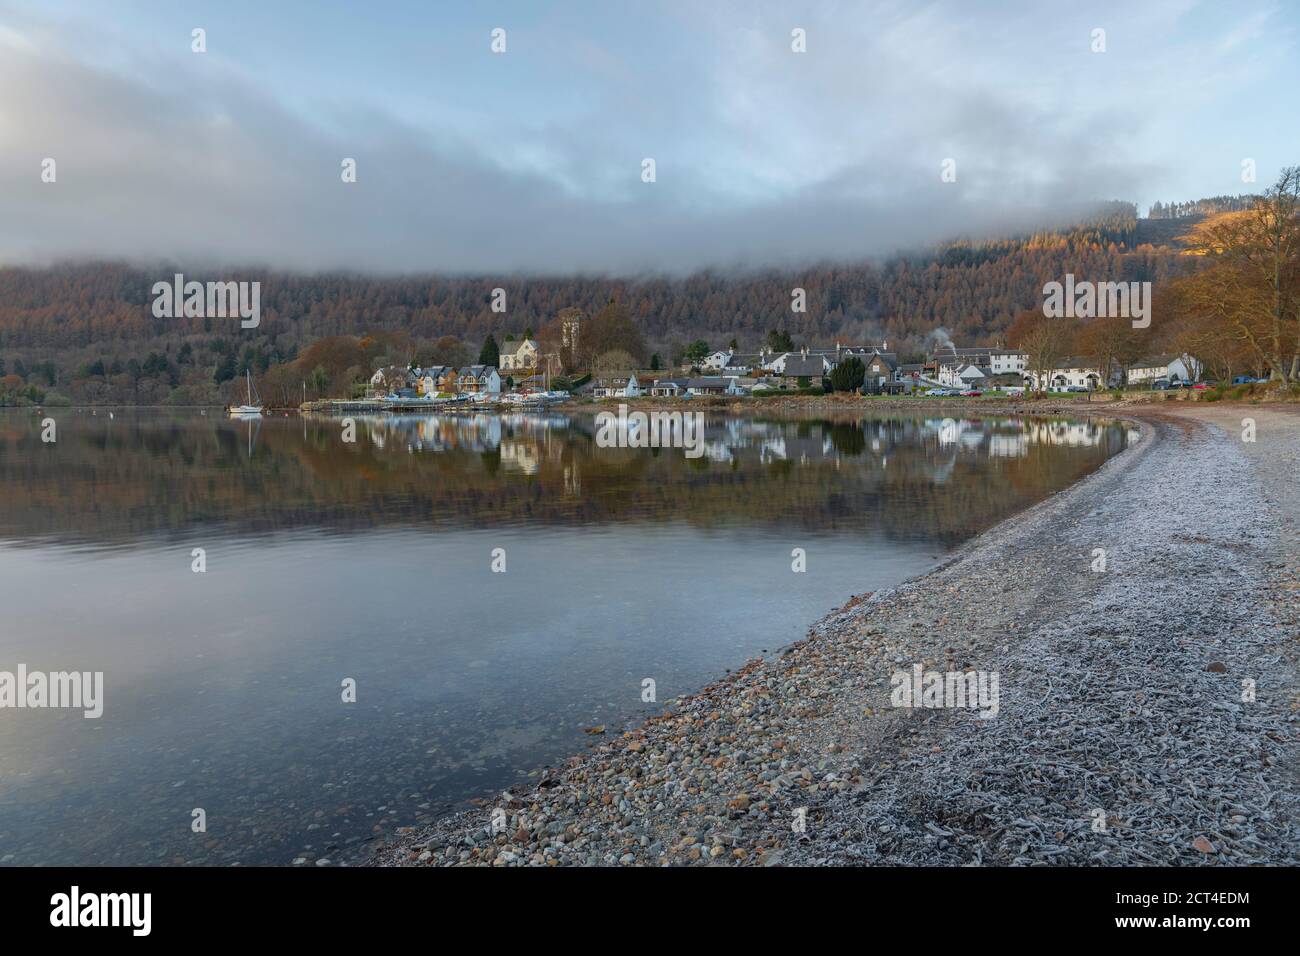 Kenmore città riflessa nel lago Loch Tay con riflessi alberi d'autunno, Perthshire, Highlands della Scozia, Regno Unito, Europa Foto Stock